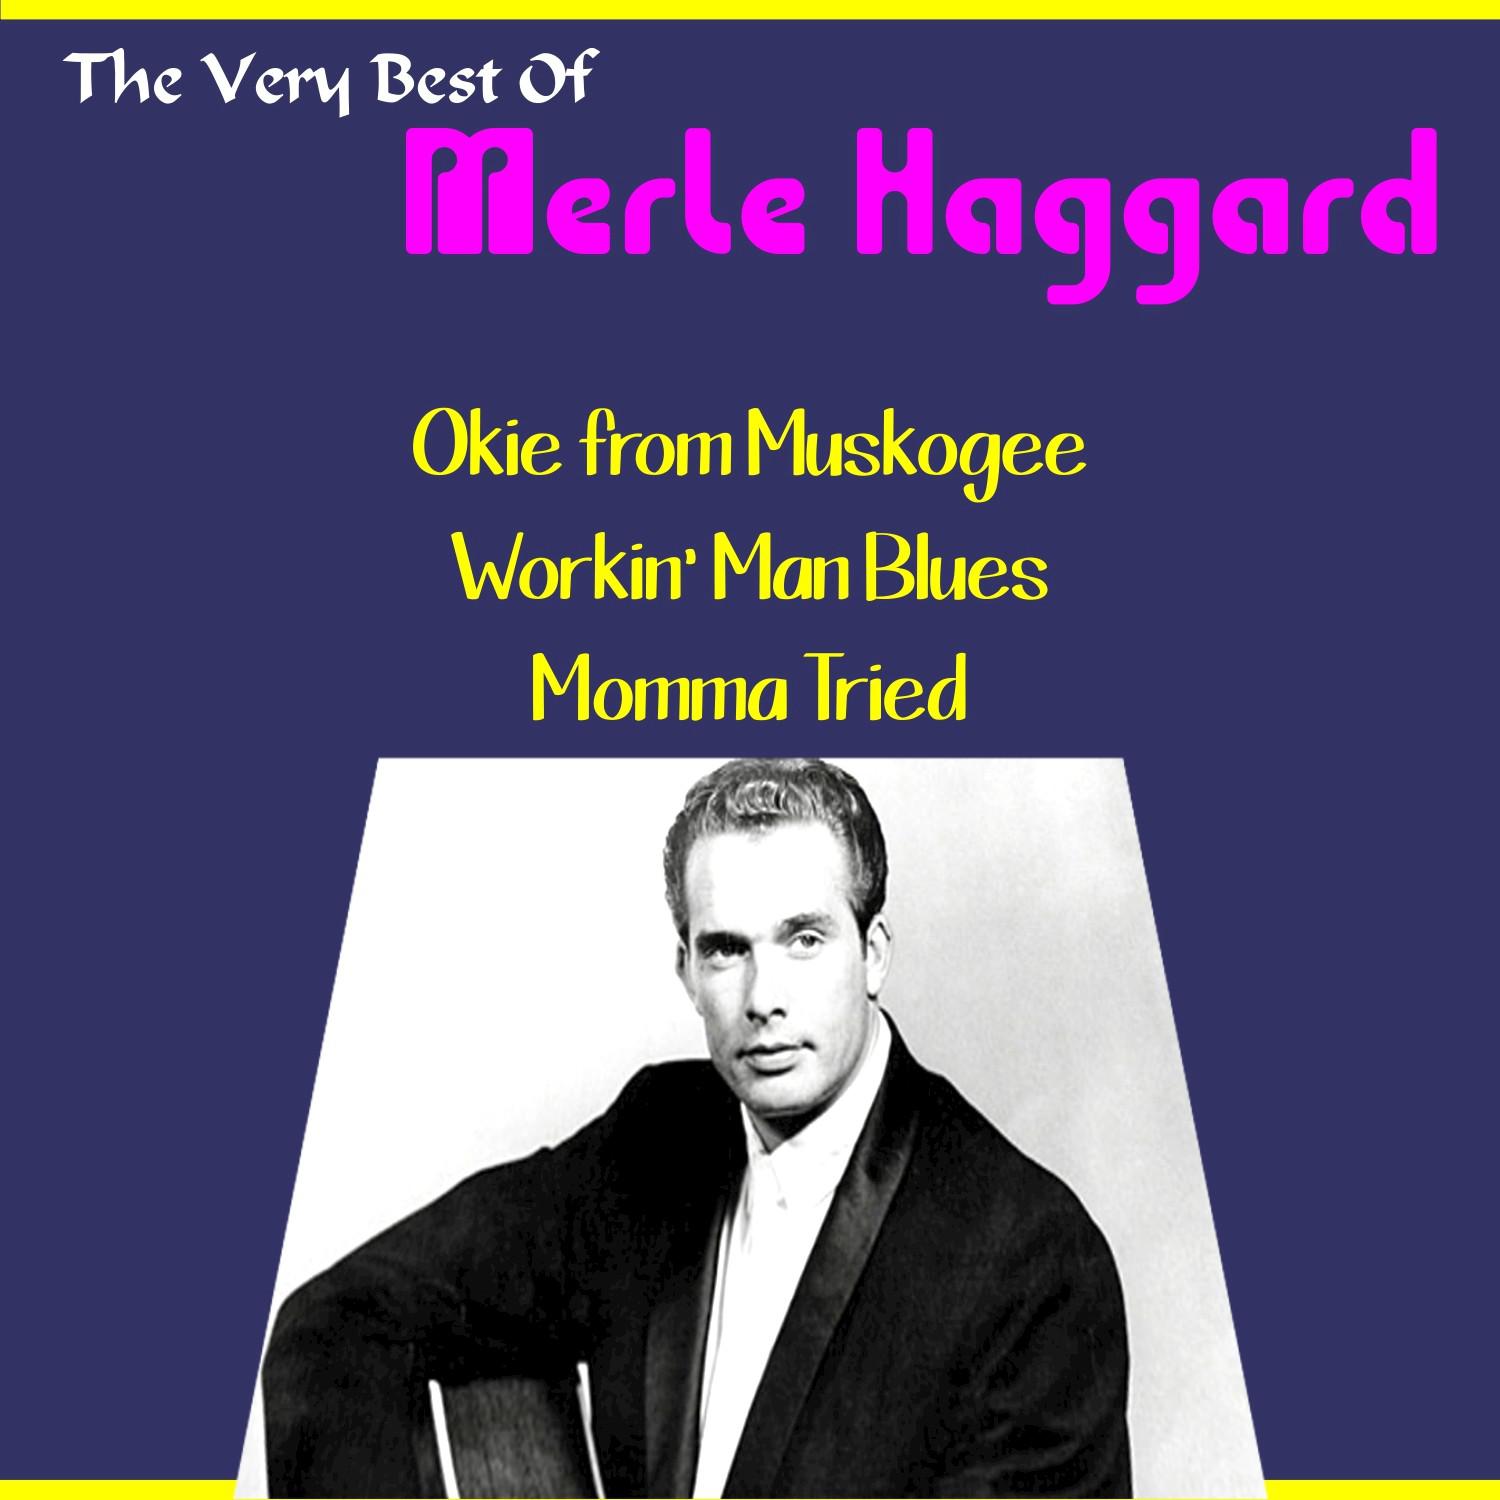 Merle Haggard, the Very Best Of